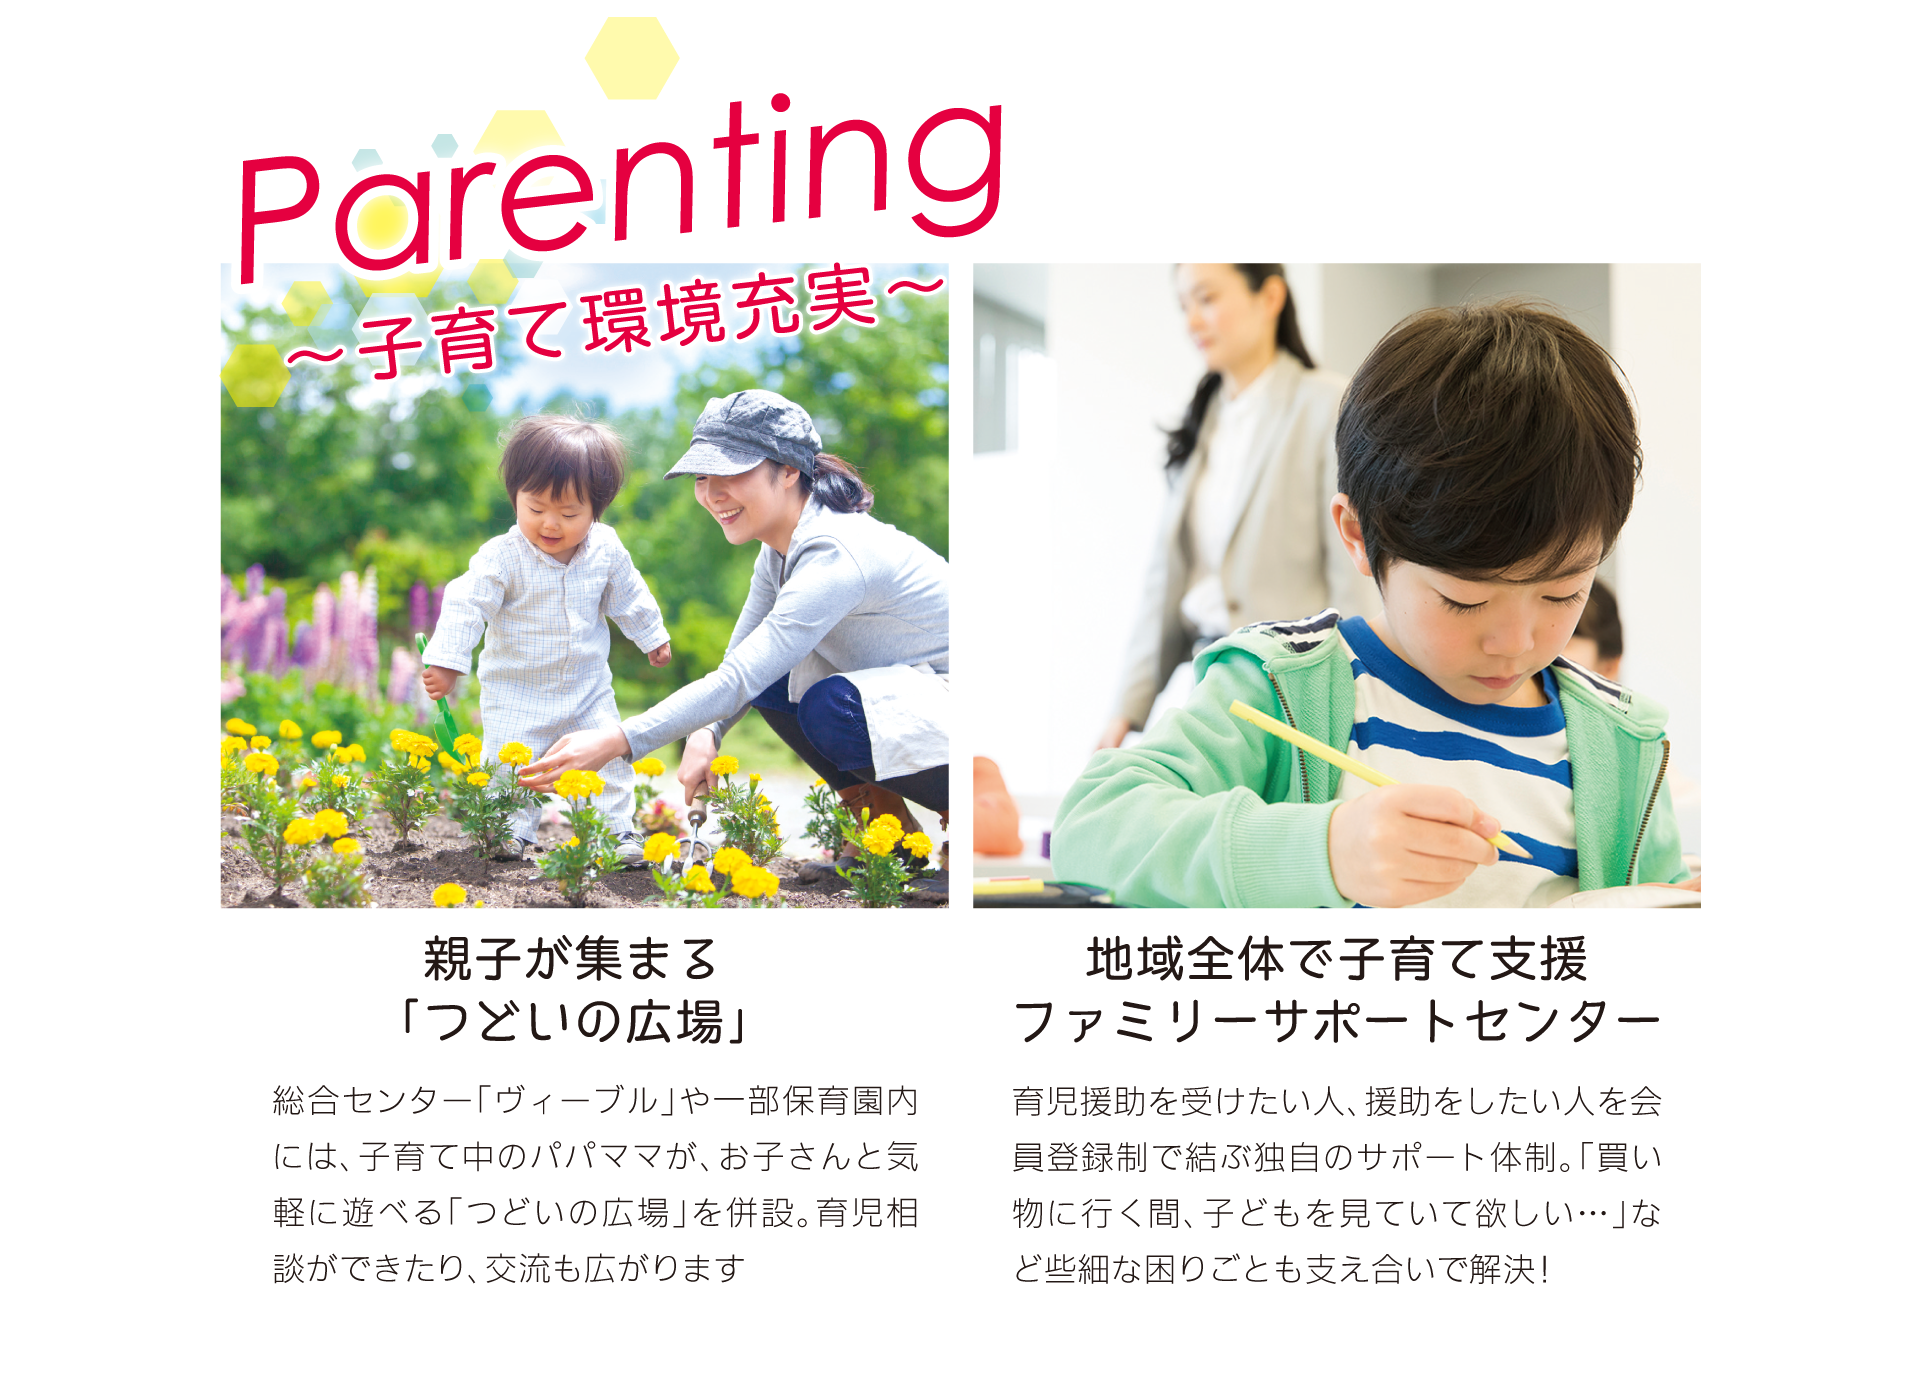 「みどりのまち 合志 新須屋ガーデン」がある合志市は、子育て支援・環境が充実